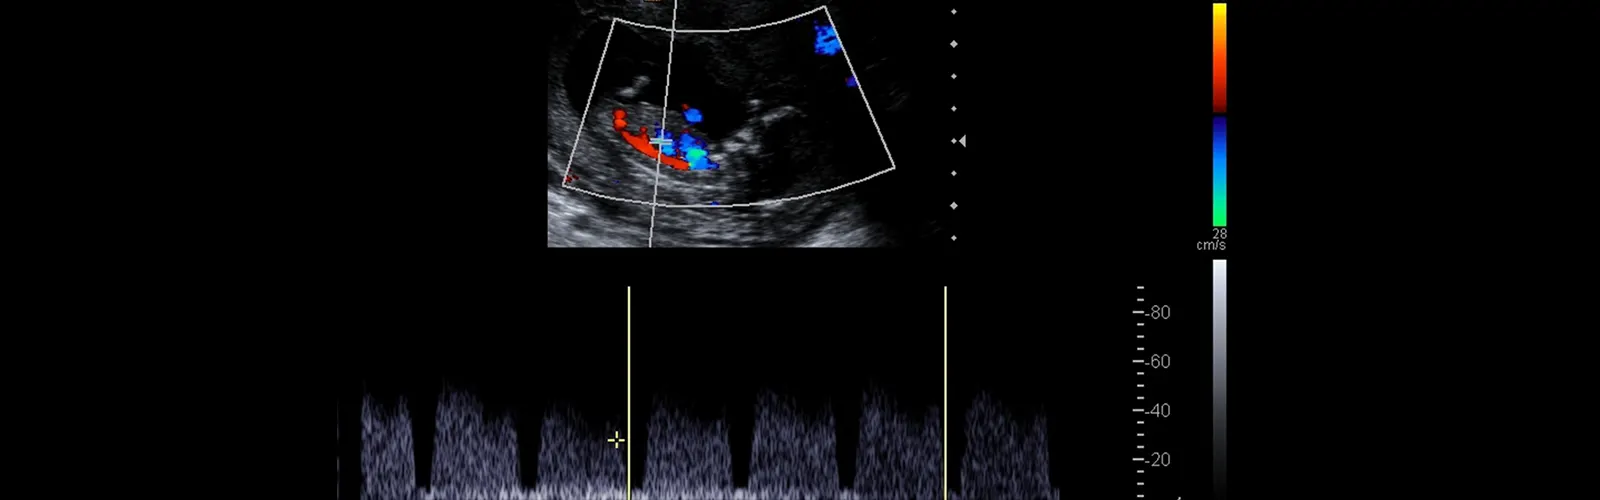 Is Color Doppler Ultrasound Safe?